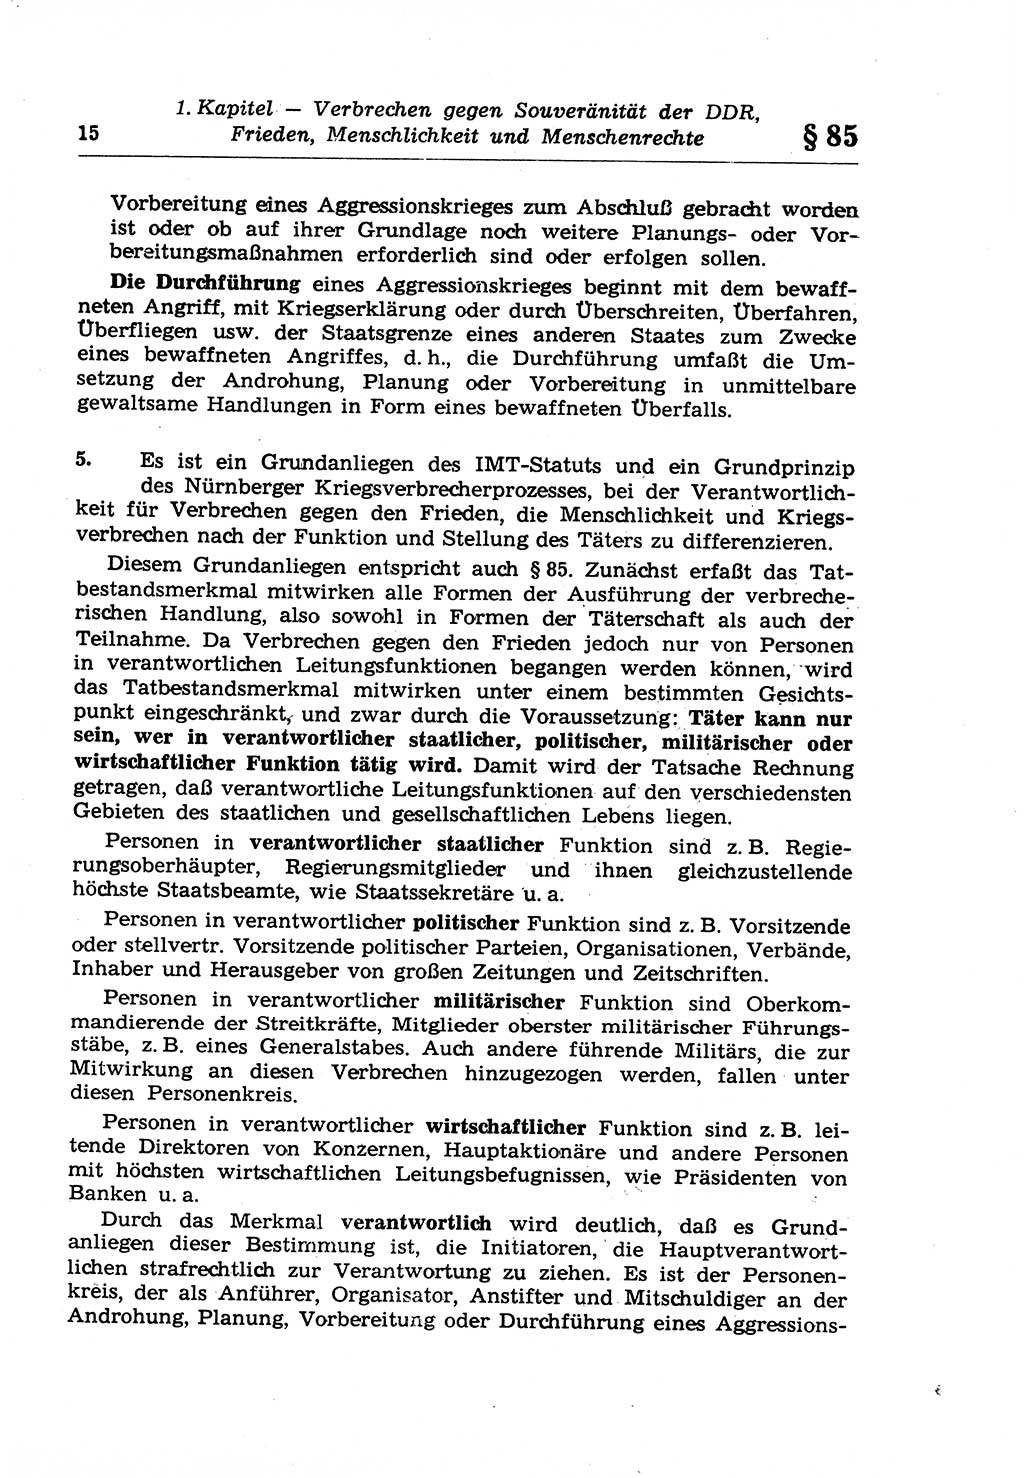 Strafrecht der Deutschen Demokratischen Republik (DDR), Lehrkommentar zum Strafgesetzbuch (StGB), Besonderer Teil 1970, Seite 15 (Strafr. DDR Lehrkomm. StGB BT 1970, S. 15)